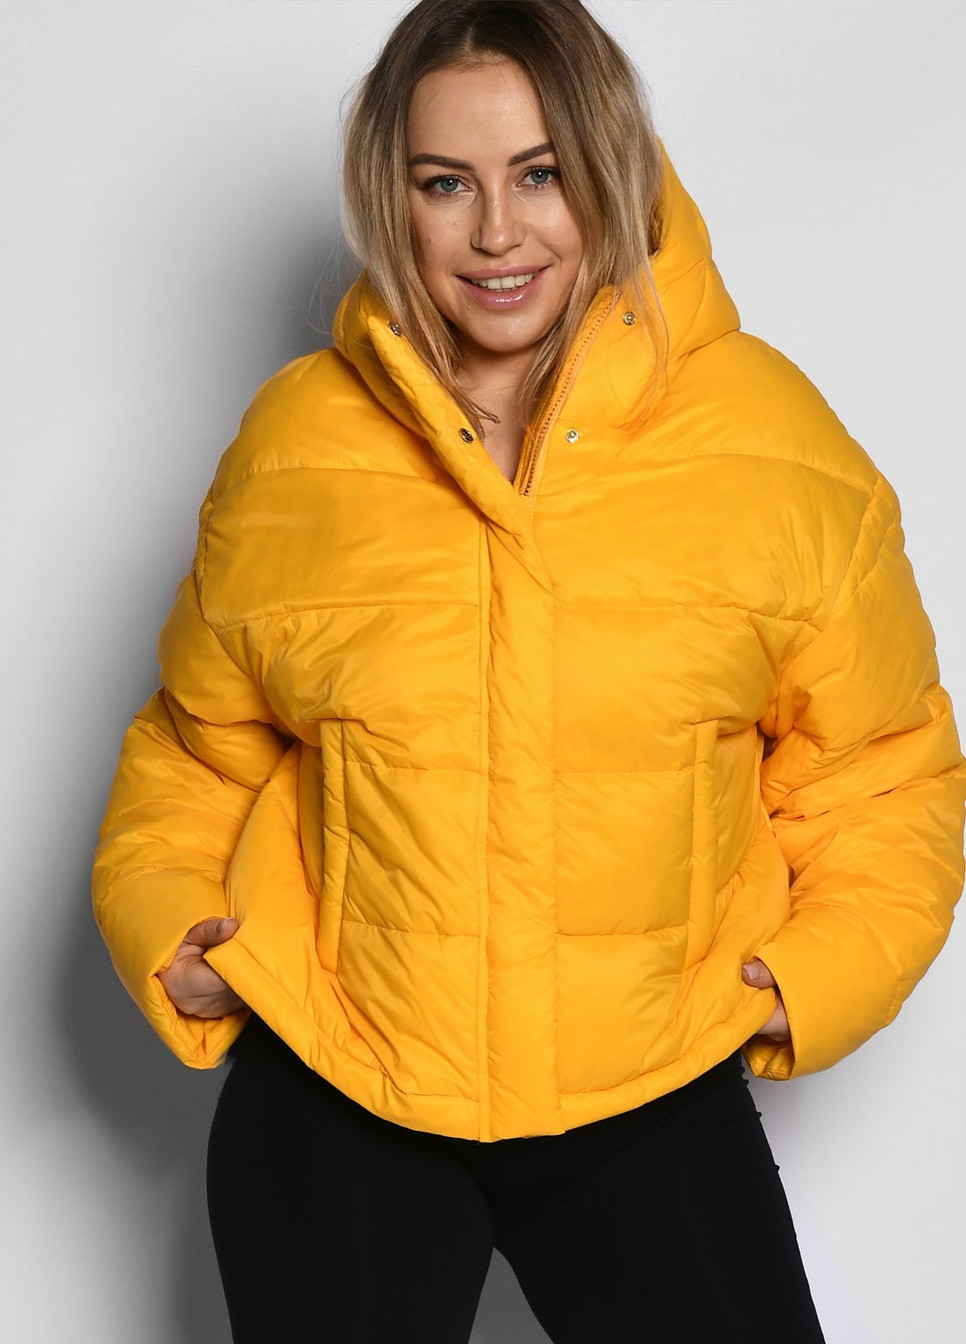 Жовта демісезонна жіноча демісезона куртка X-Woyz